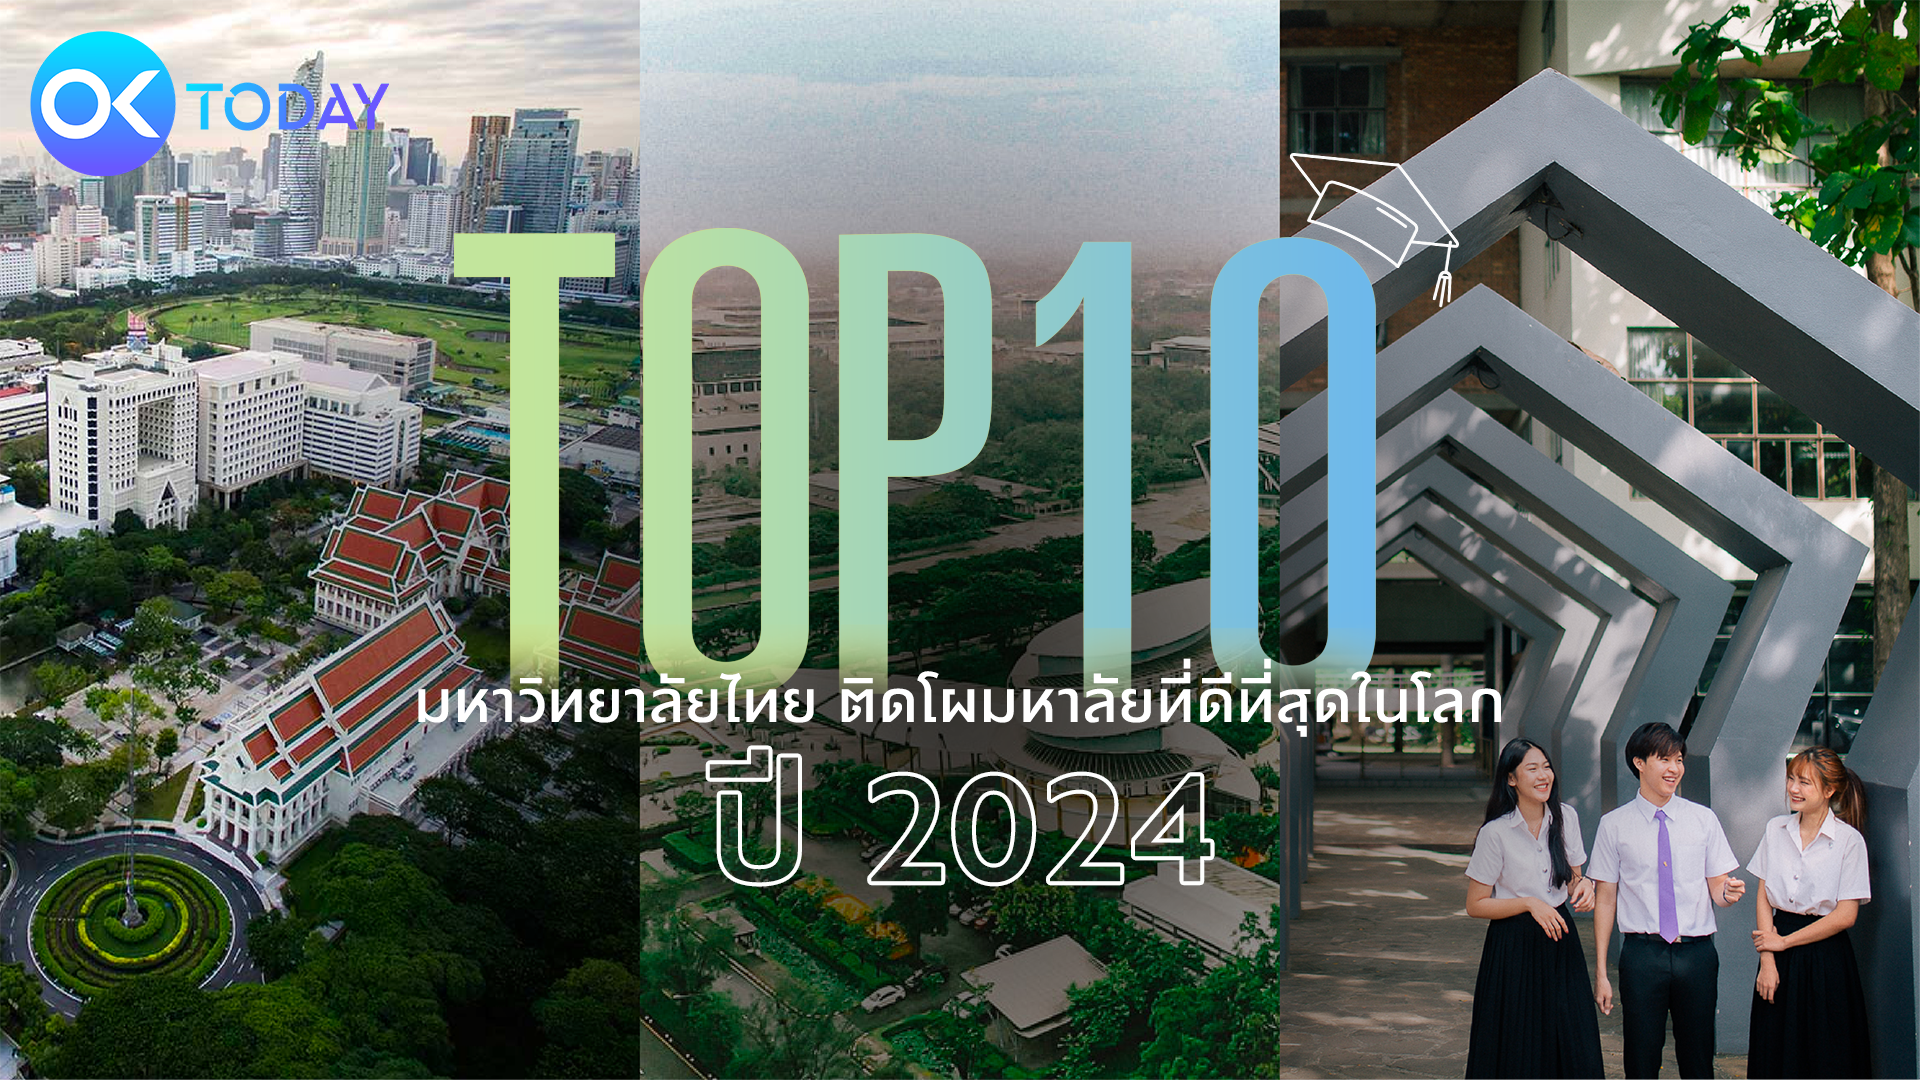 TOP 10 มหาวิทยาลัยไทย ติดโผมหาวิทยาลัยที่ดีที่สุดในโลก ปี 2024